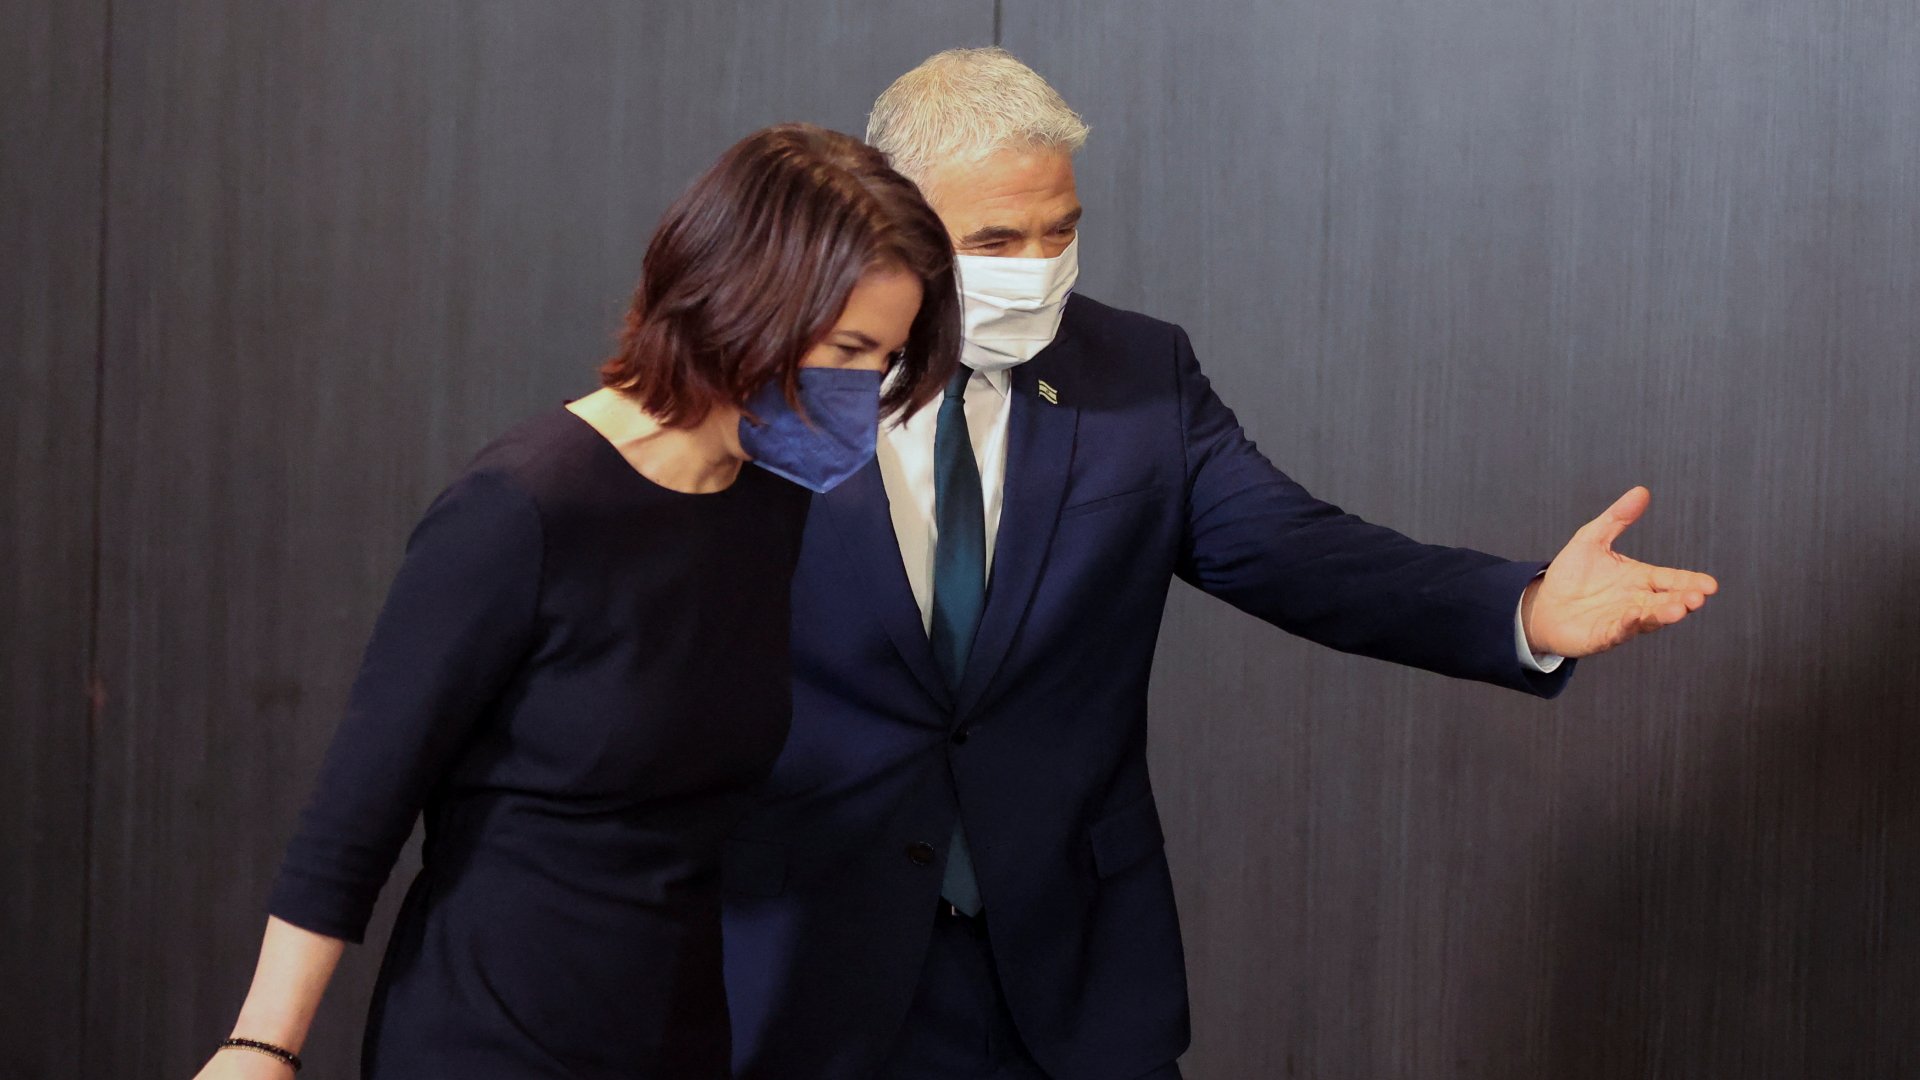 Bundesaußenministerin Annalena Baerbock und Israels Außenminister Jair Lapid auf dem Weg zur gemeinsamen Pressekonferenz im Februar 2022. Beide tragen Corona-Schutzmasken.